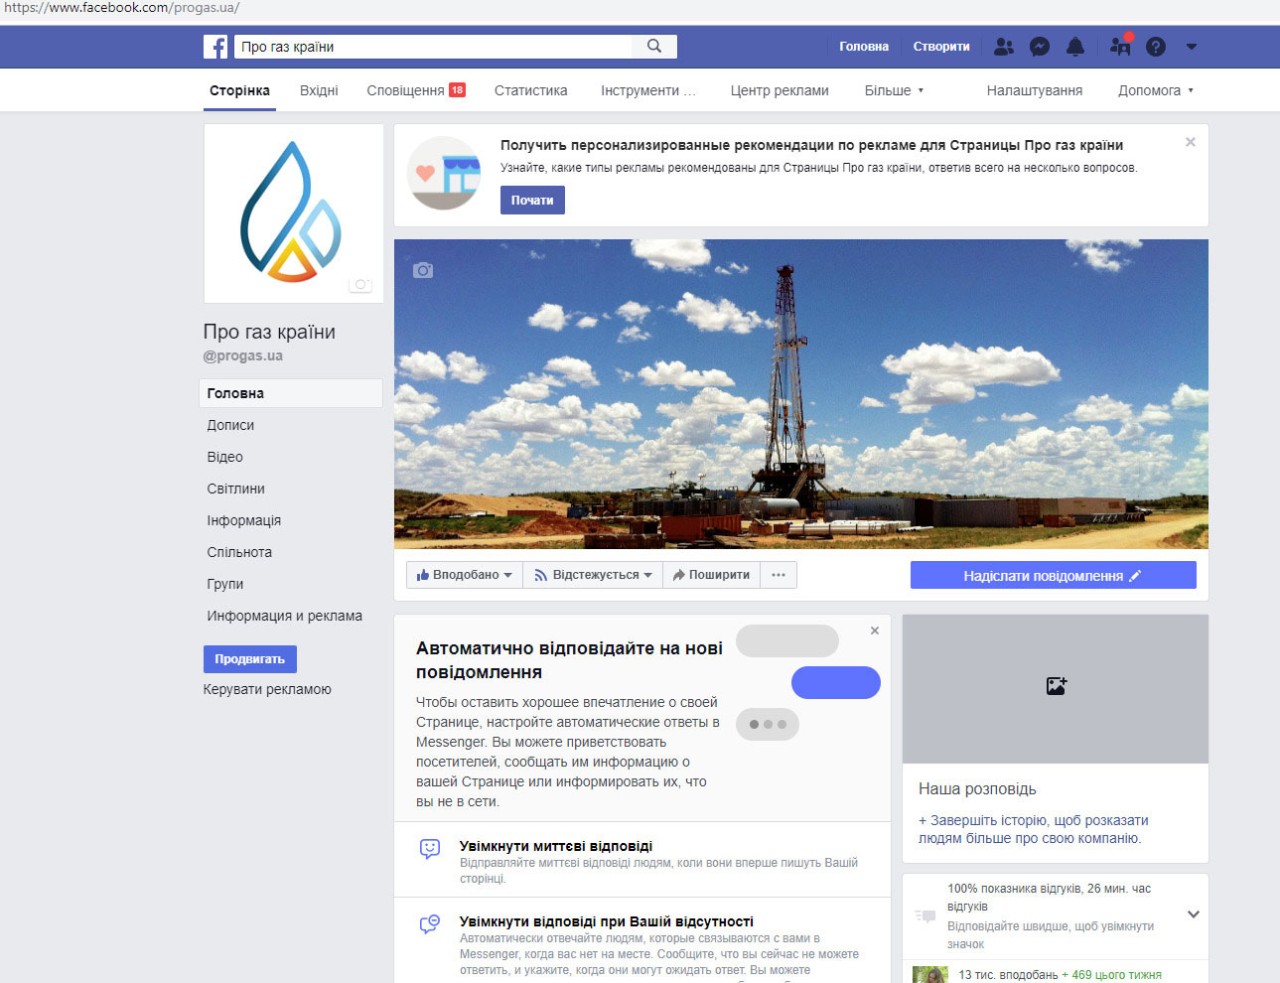 Фейсбук-сторінка «Про газ країни» розповідає останні новини галузі